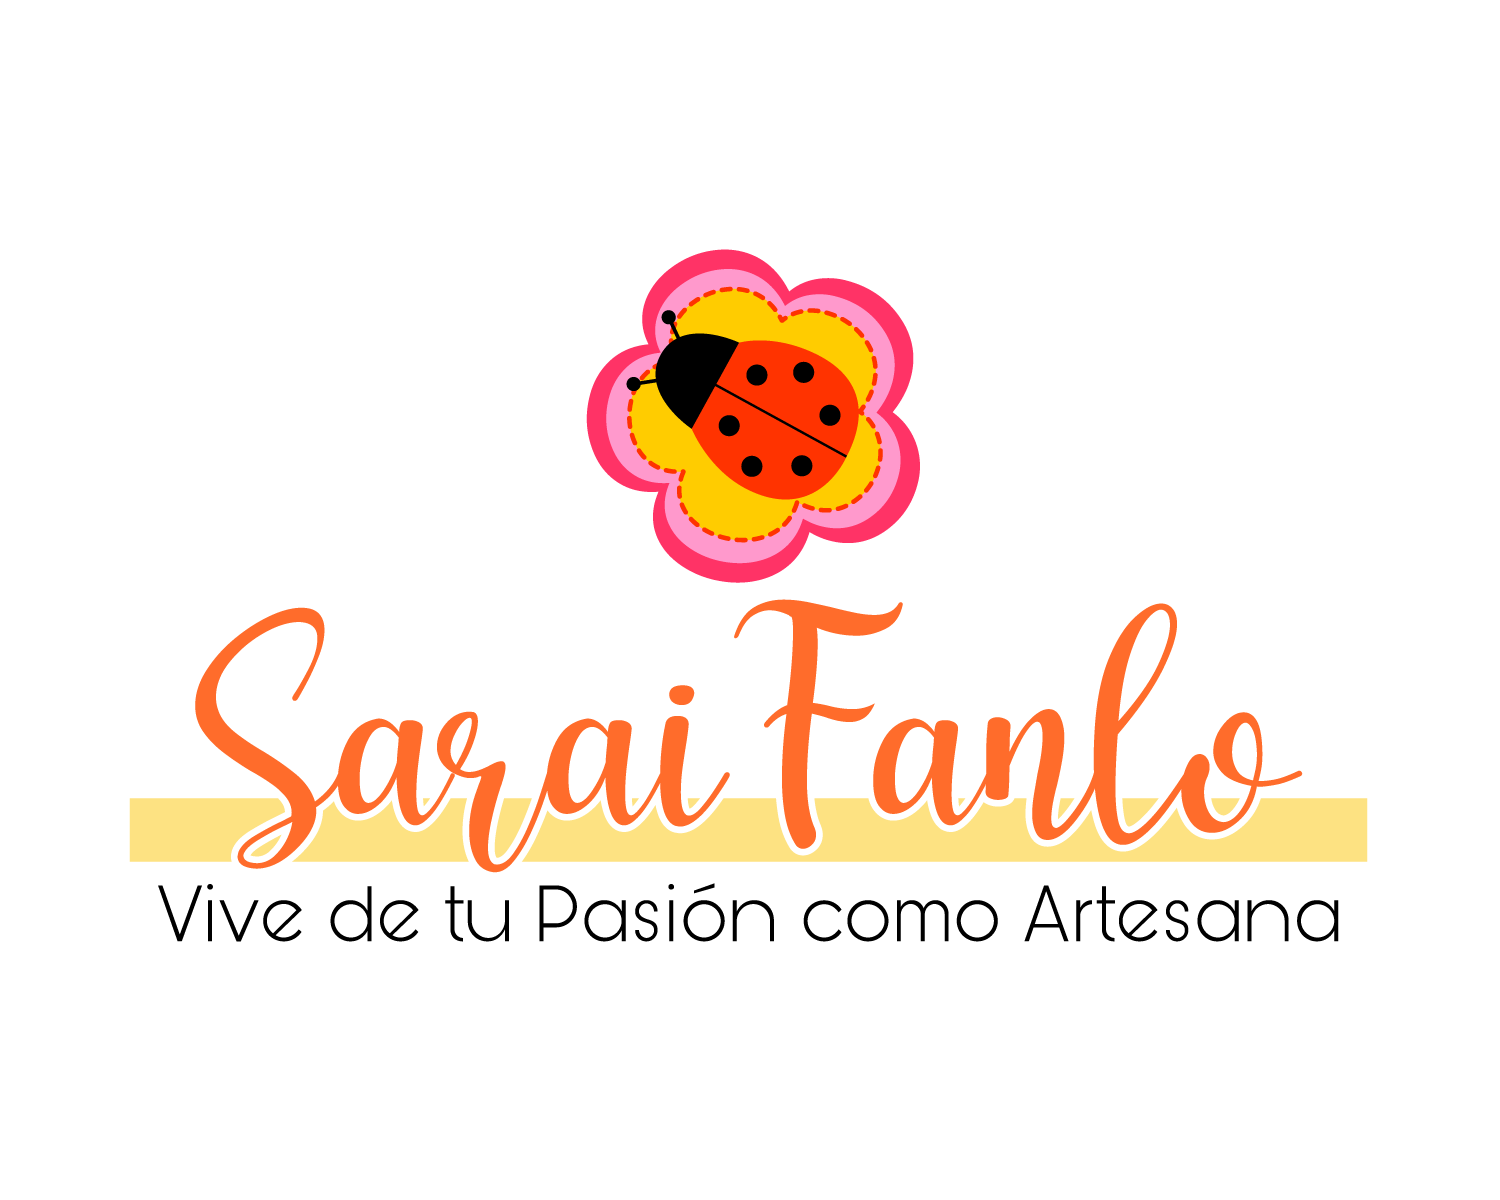 Sarai Fanlo - Mentora de Artesanas